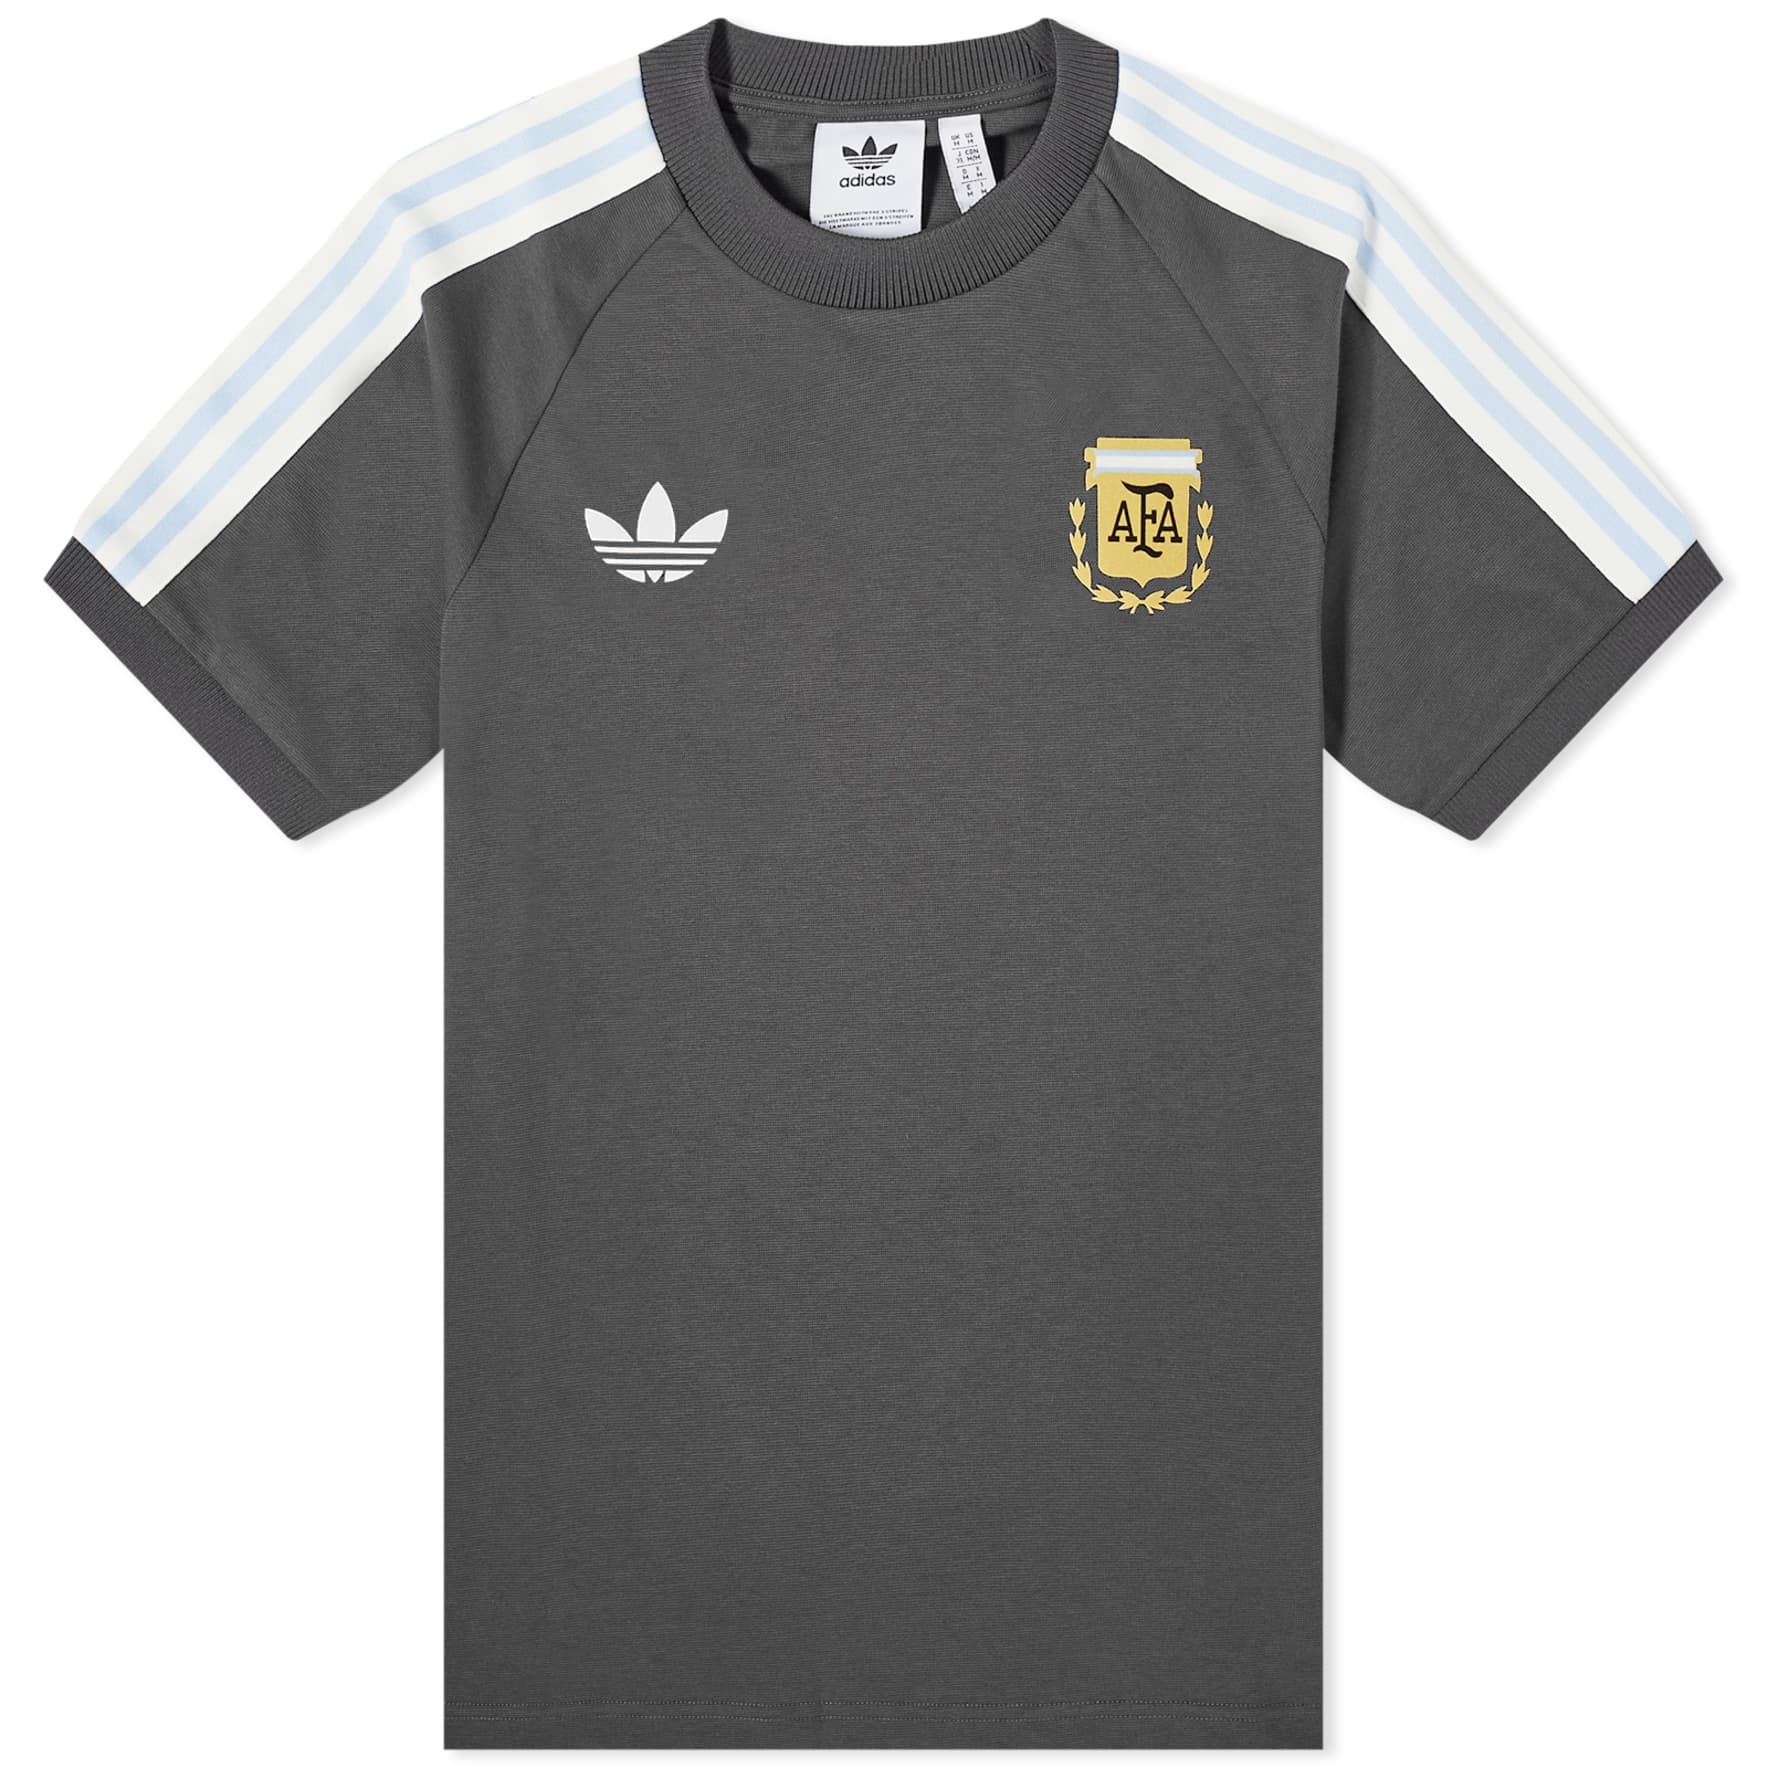 Футболка Adidas Argentina OG 3 Stripe, темно-серый/мультиколор